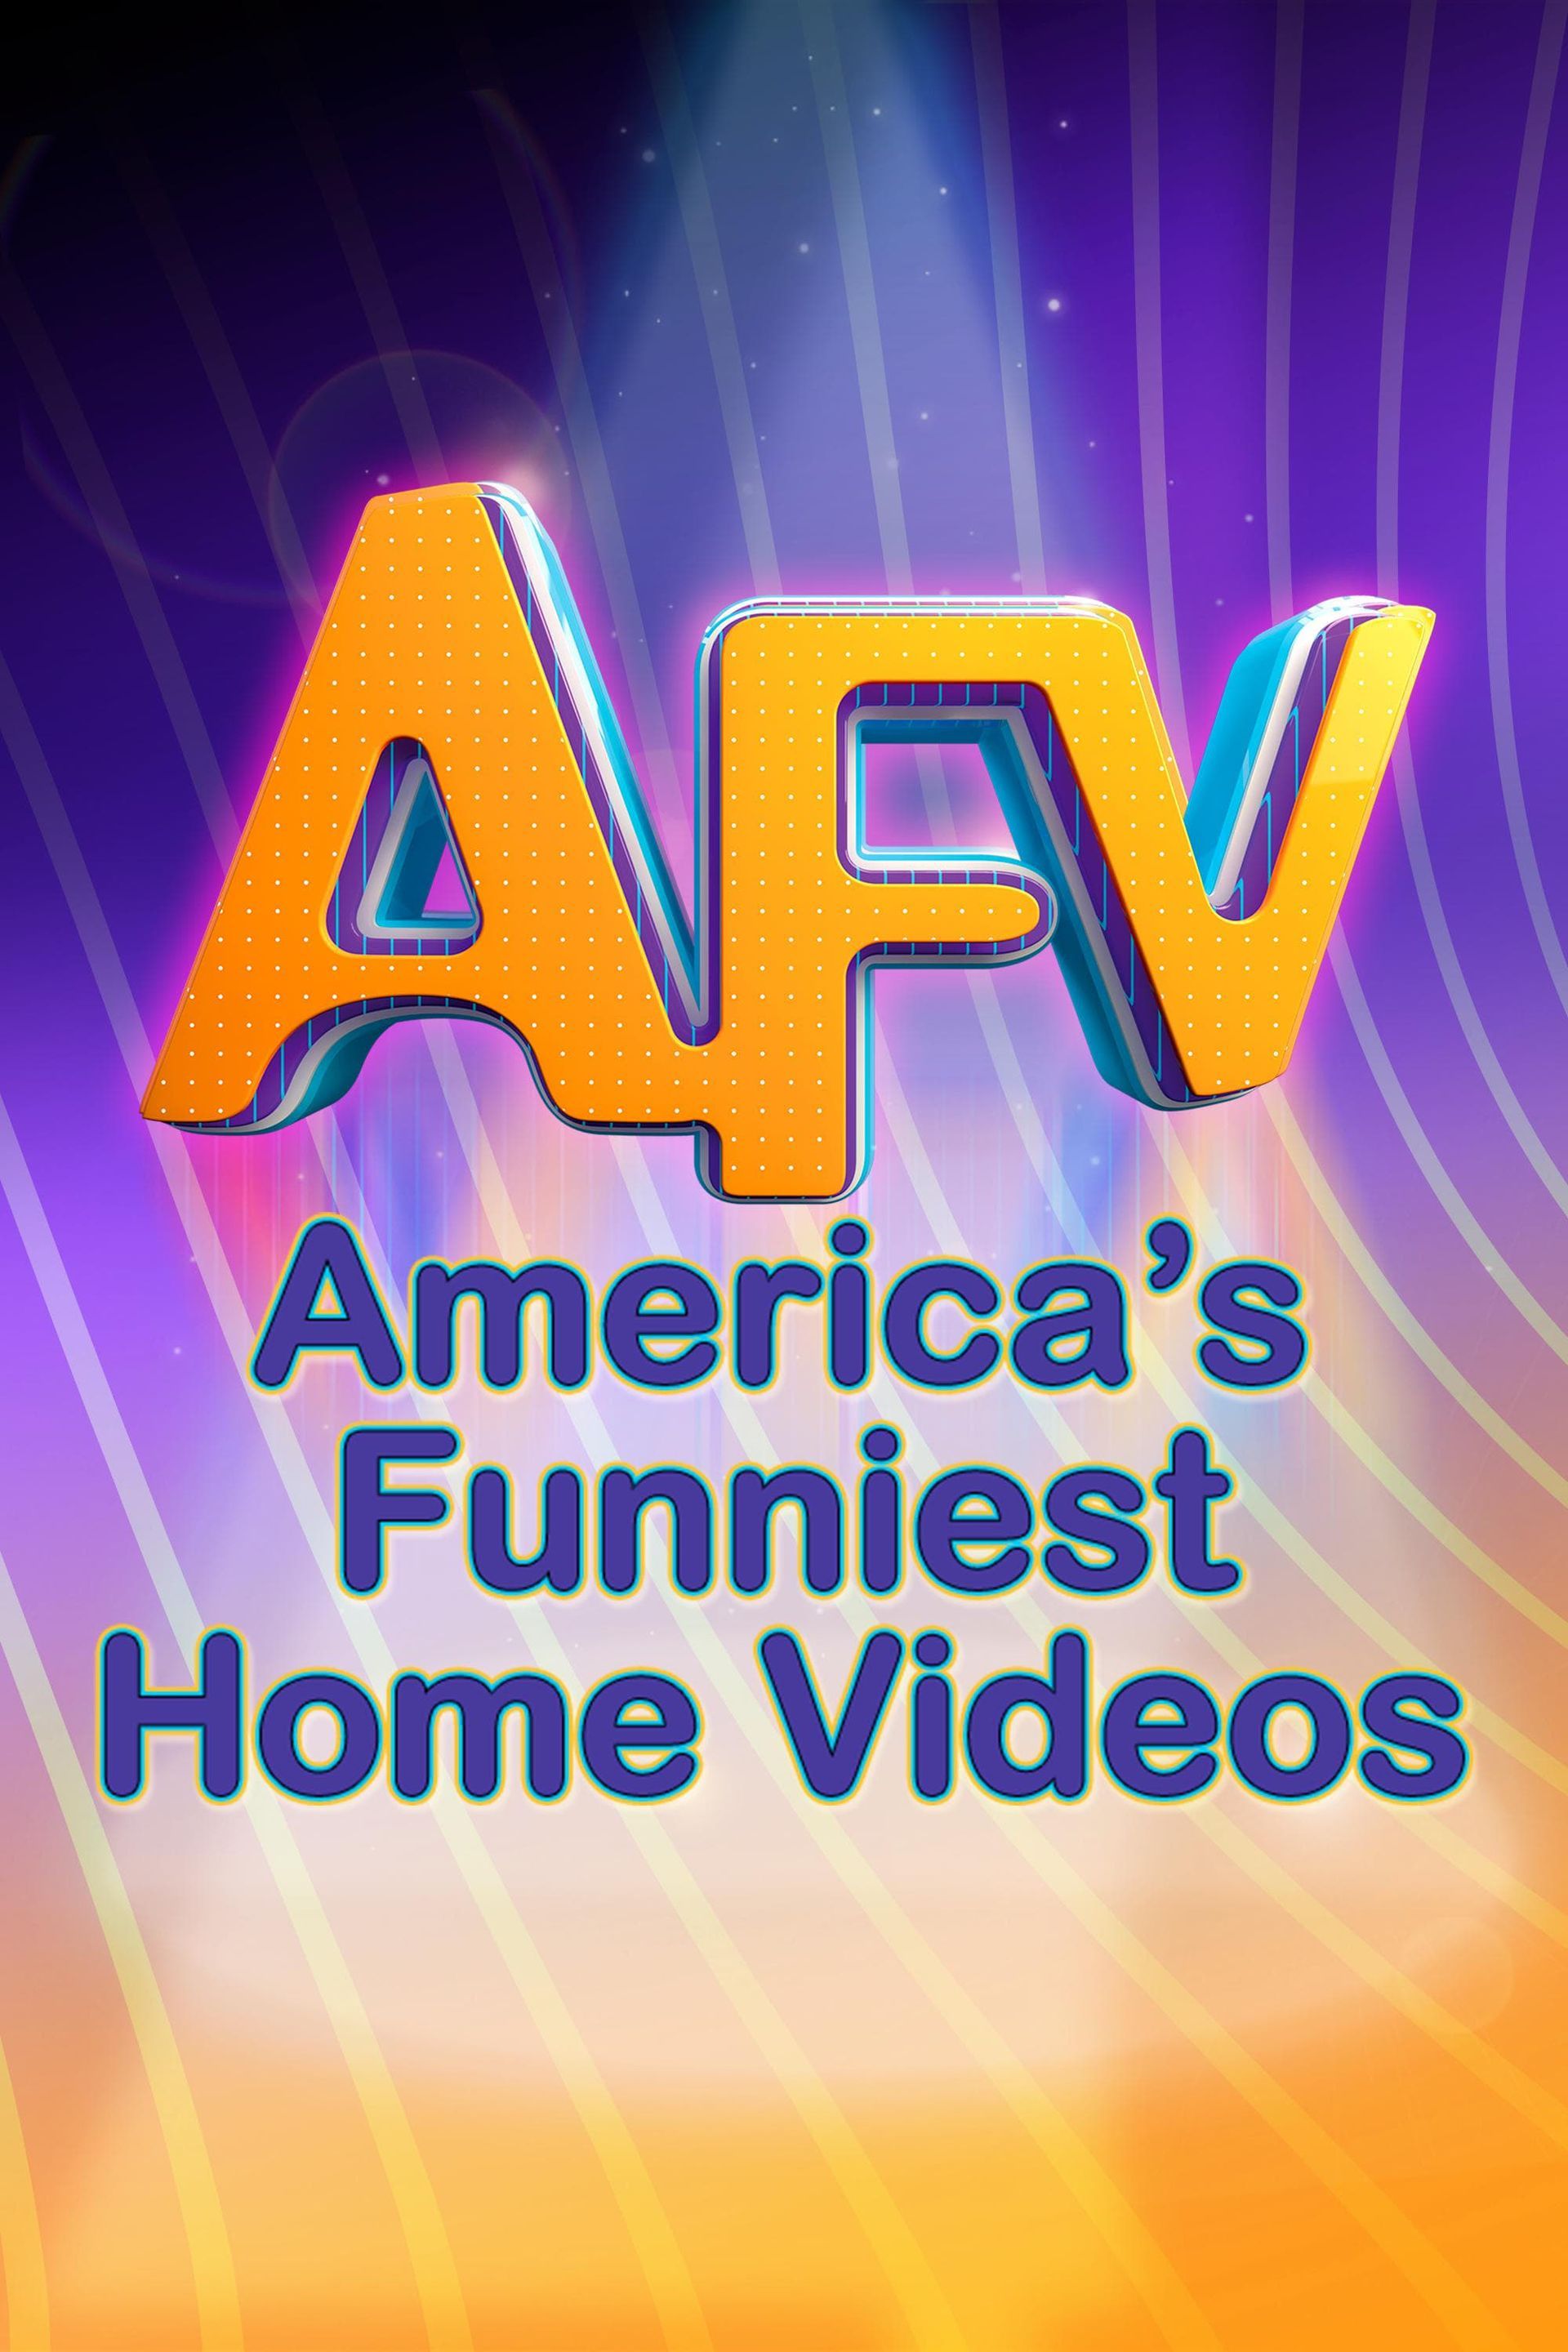 Watch America's Funniest Home Videos (1989) TV Series Online - Plex